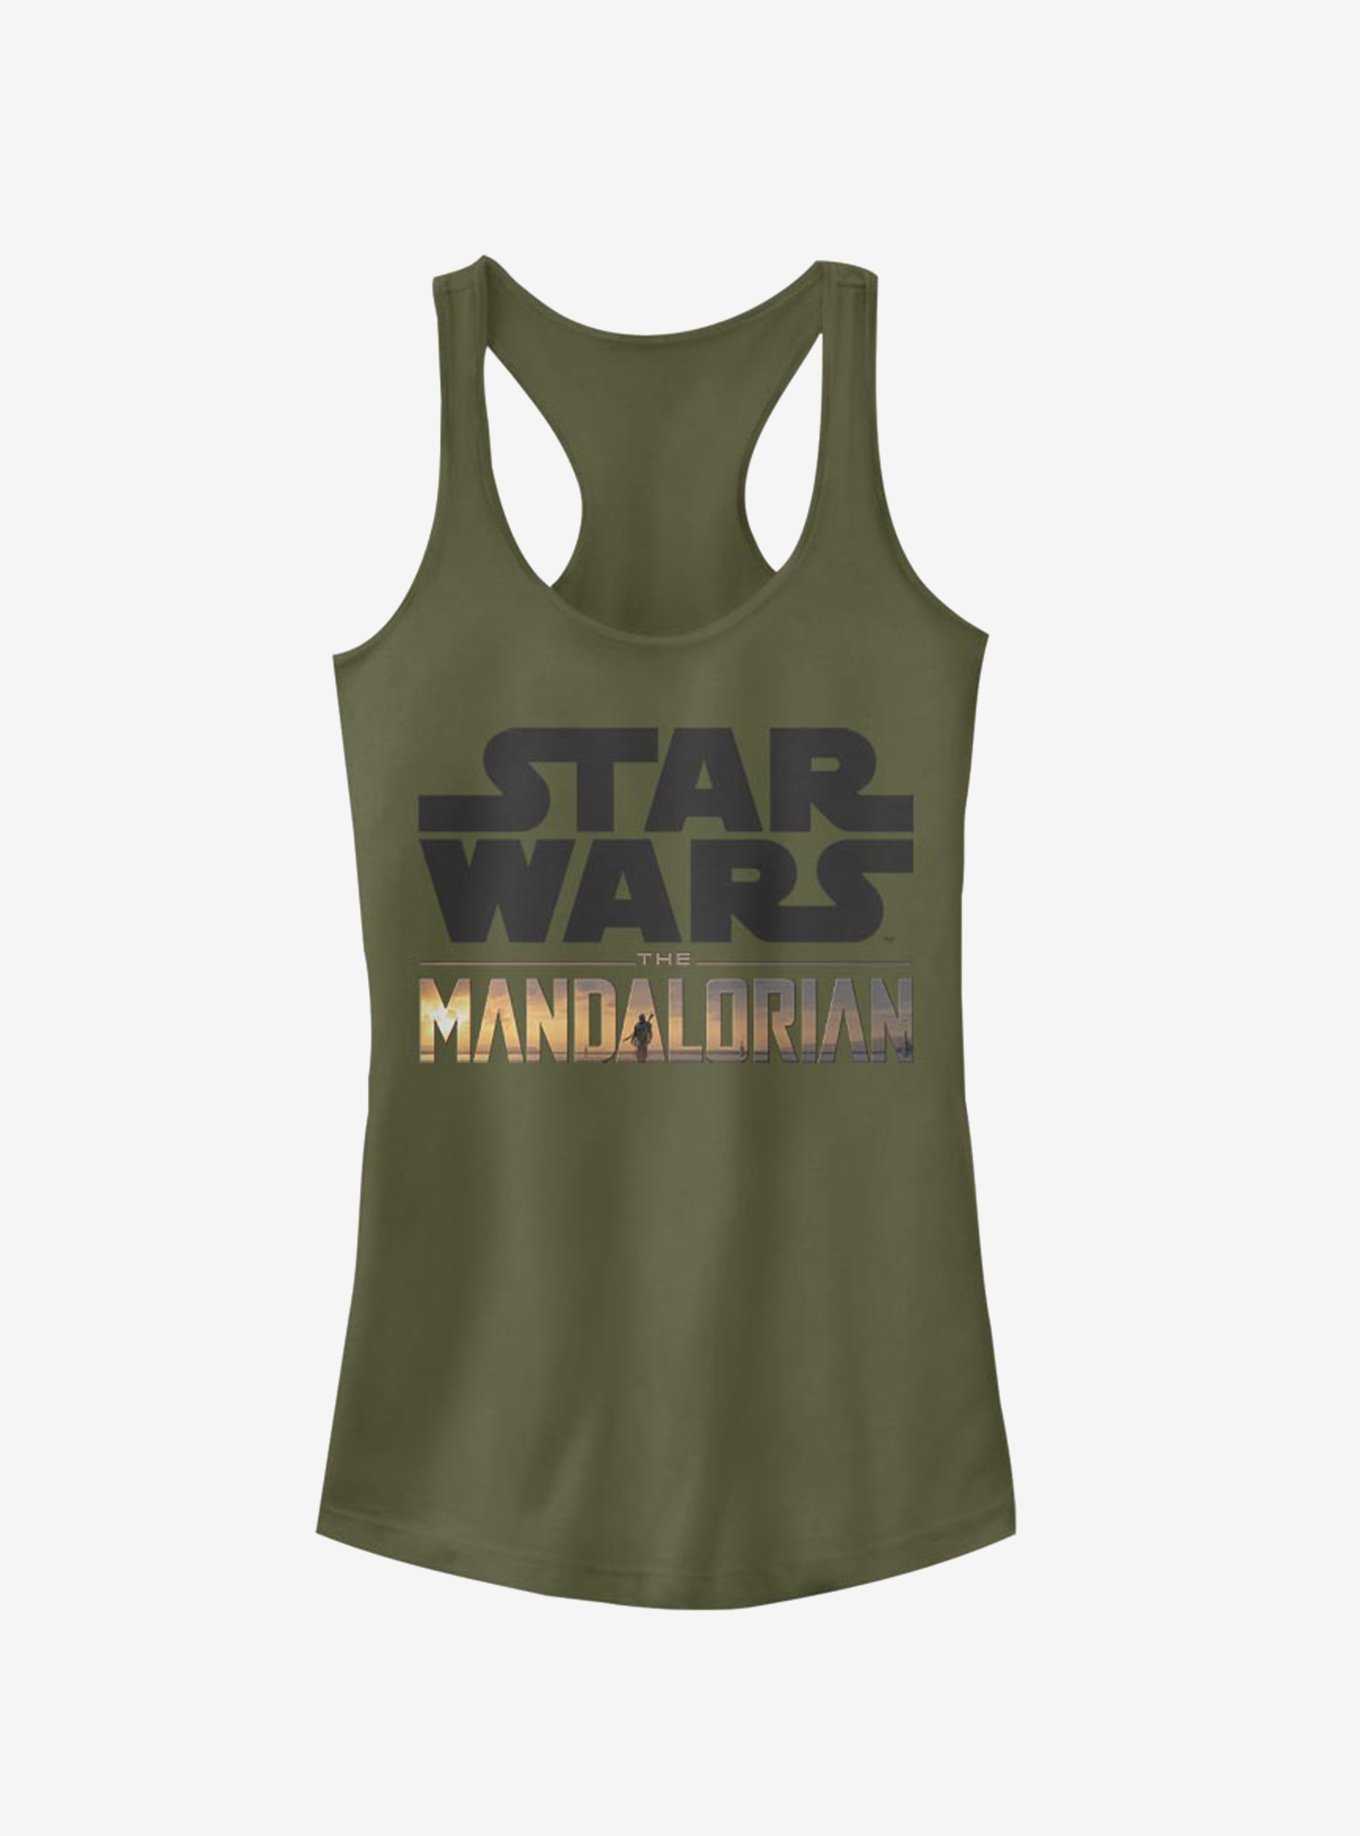 Star Wars The Mandalorian Stacked Logo Girls Tank, , hi-res